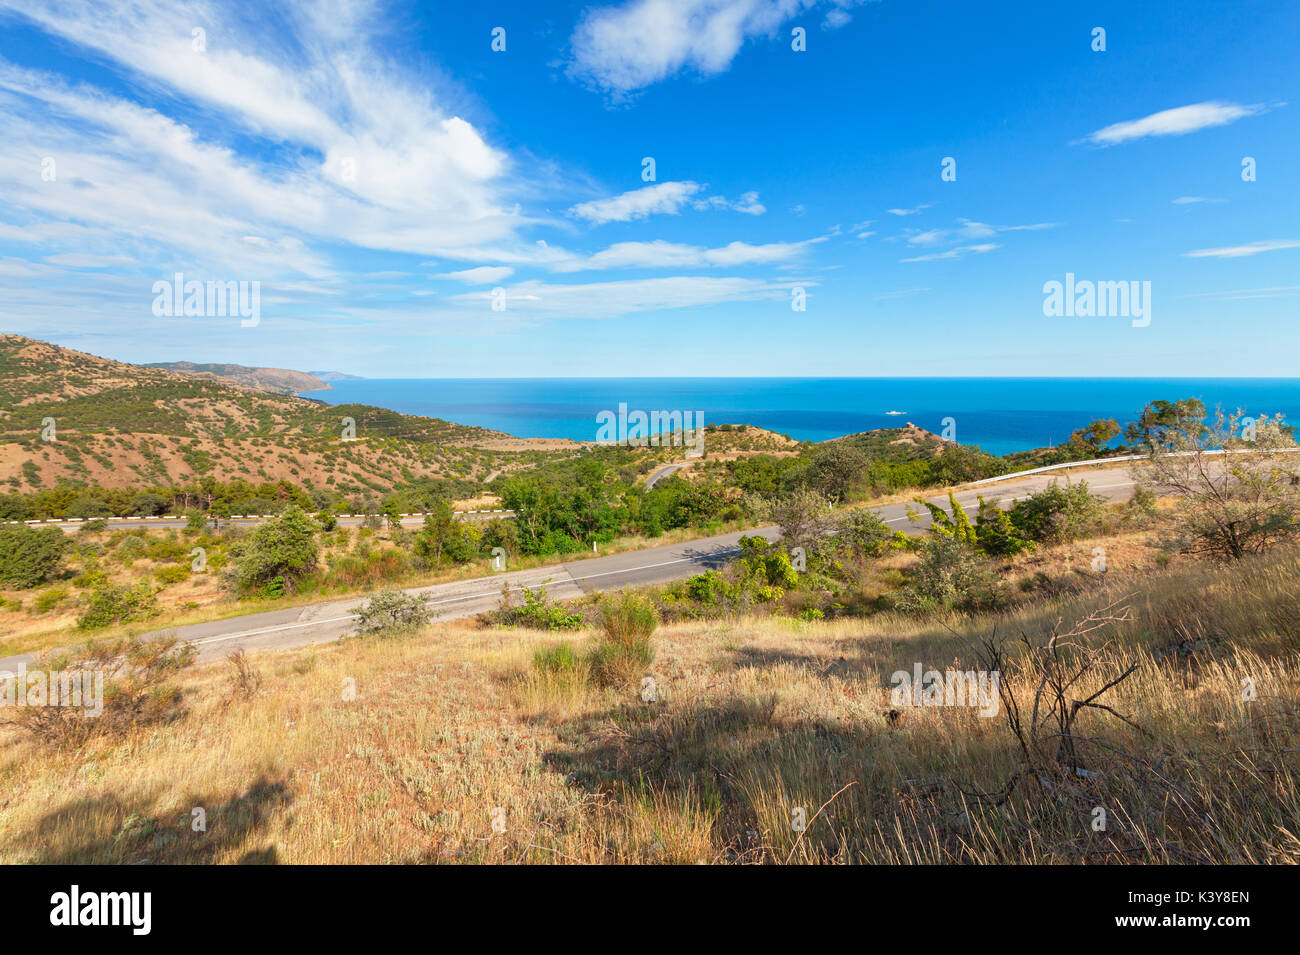 La strada attraverso le colline vicino alla costa. La penisola di Crimea, la costa del Mar Nero Foto Stock